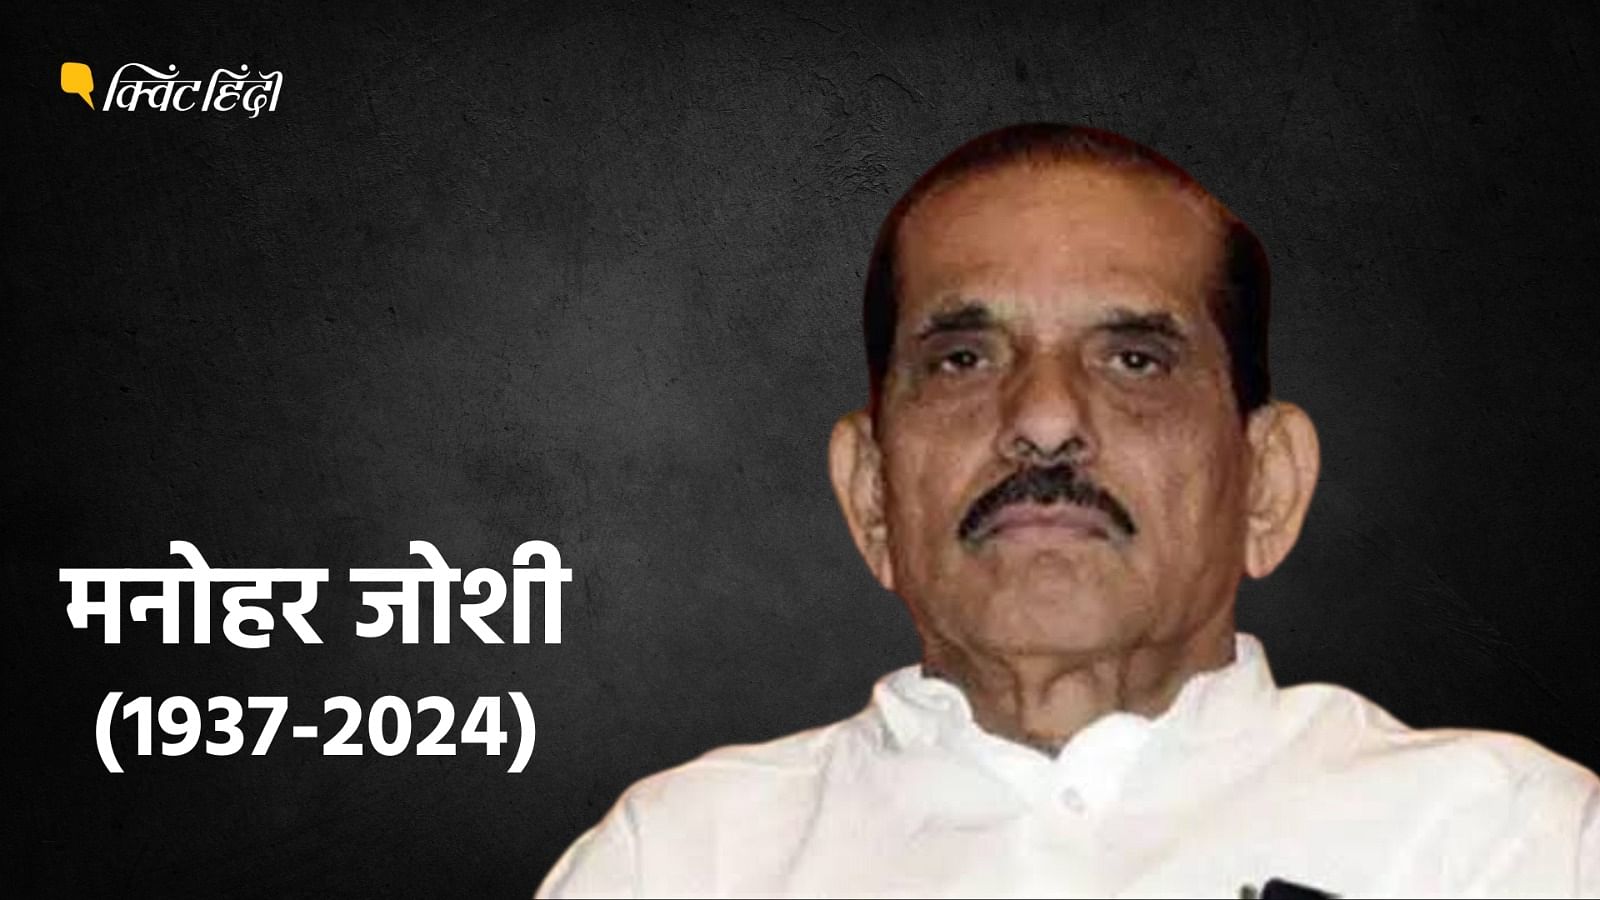 <div class="paragraphs"><p>महाराष्ट्र के पूर्व CM मनोहर जोशी का निधन, 86 साल की उम्र में दुनिया को कहा अलविदा</p></div>